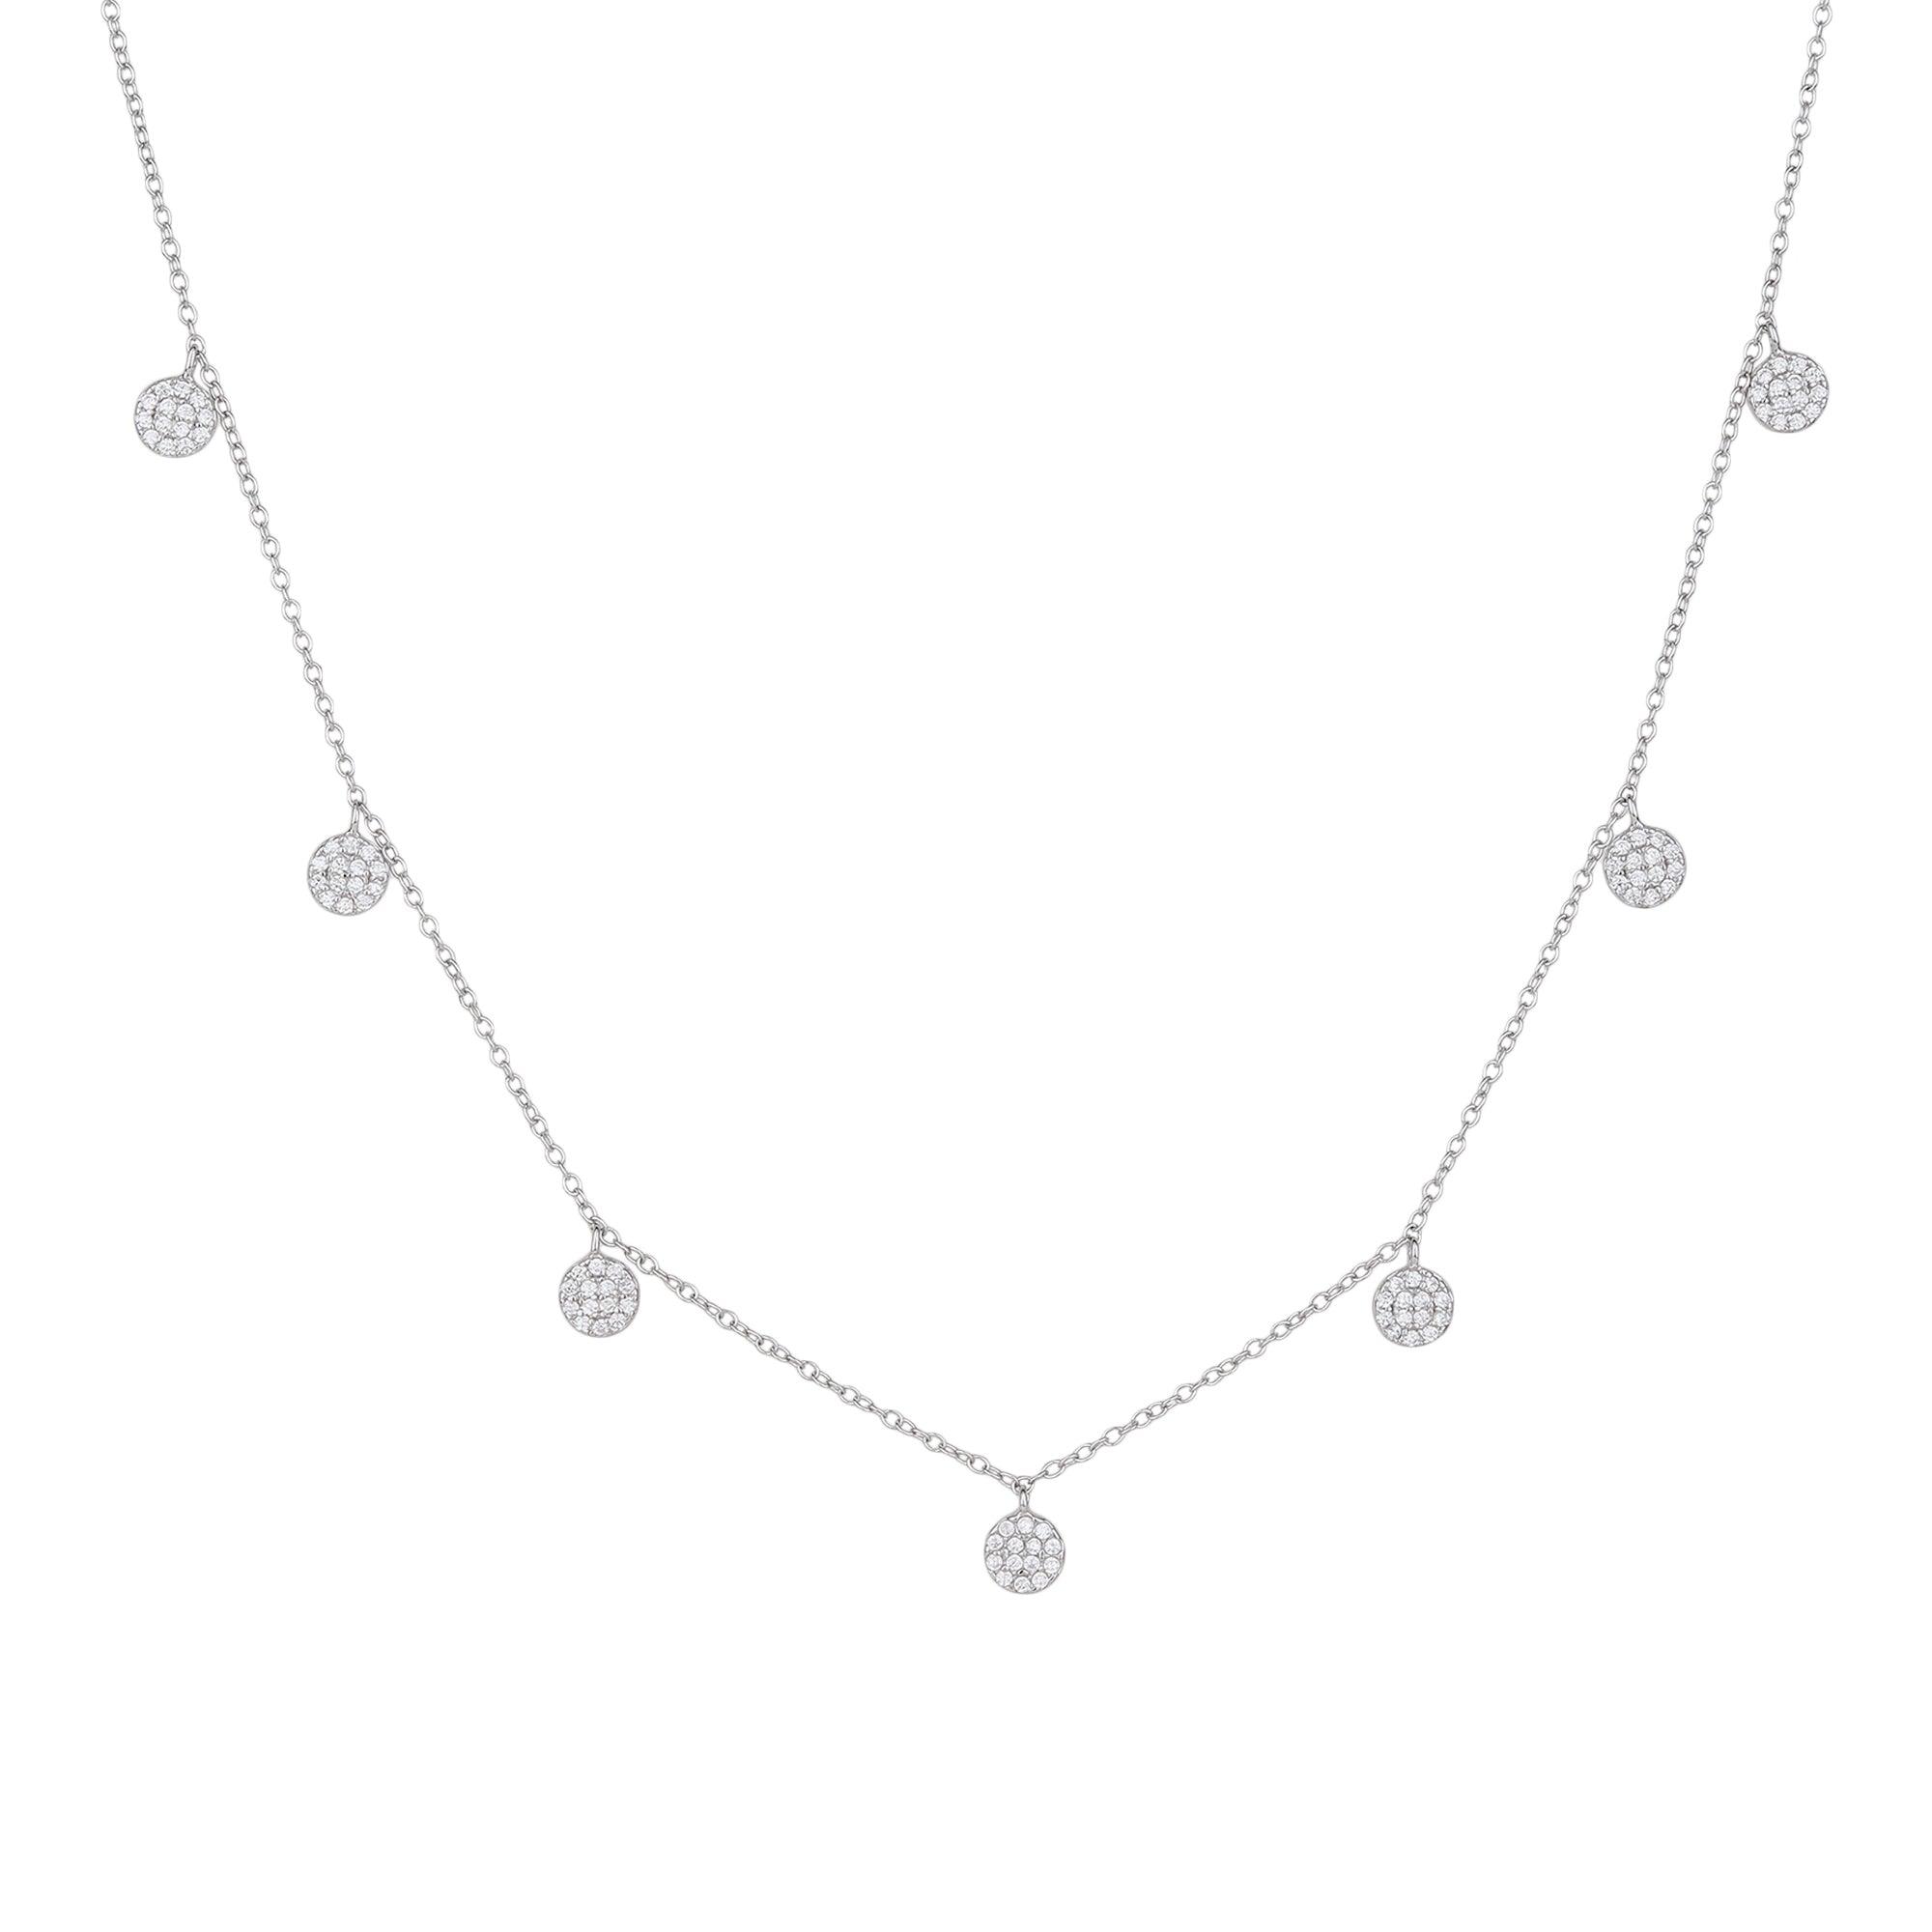 Seven Drop Necklace - silvermark